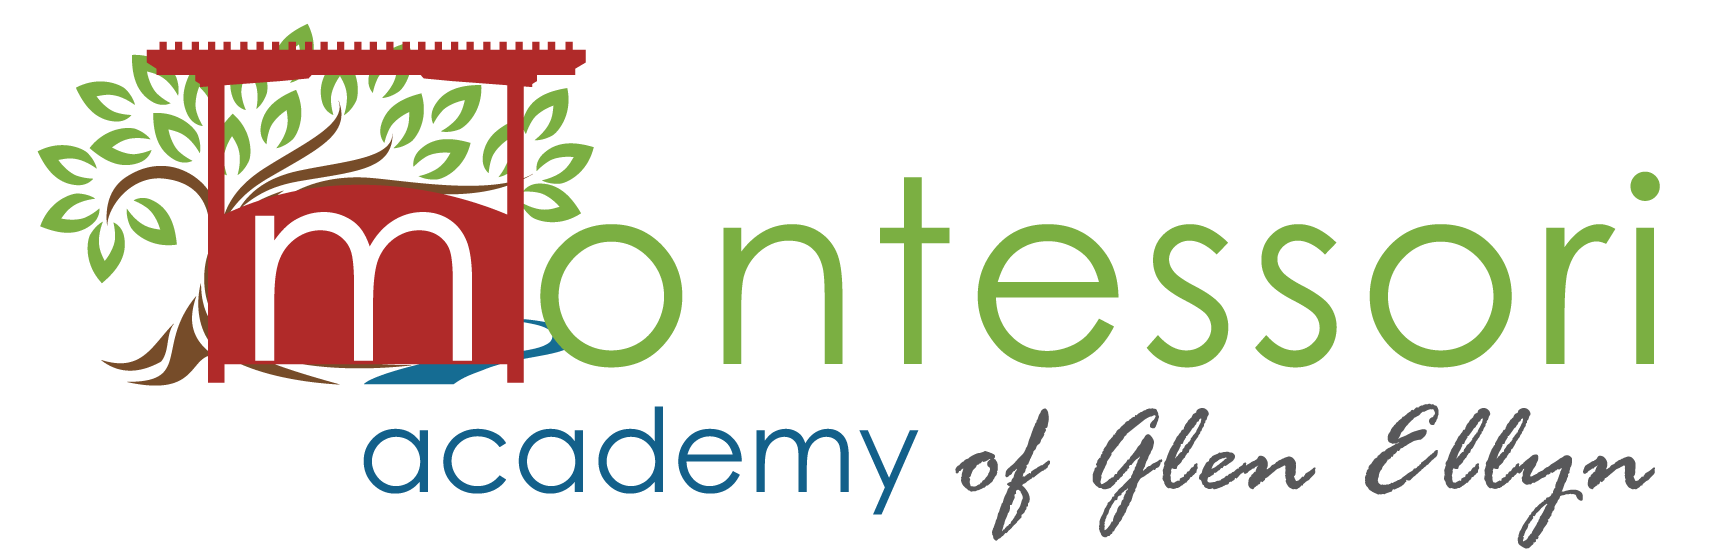 Montessori Academy of Glen Ellyn